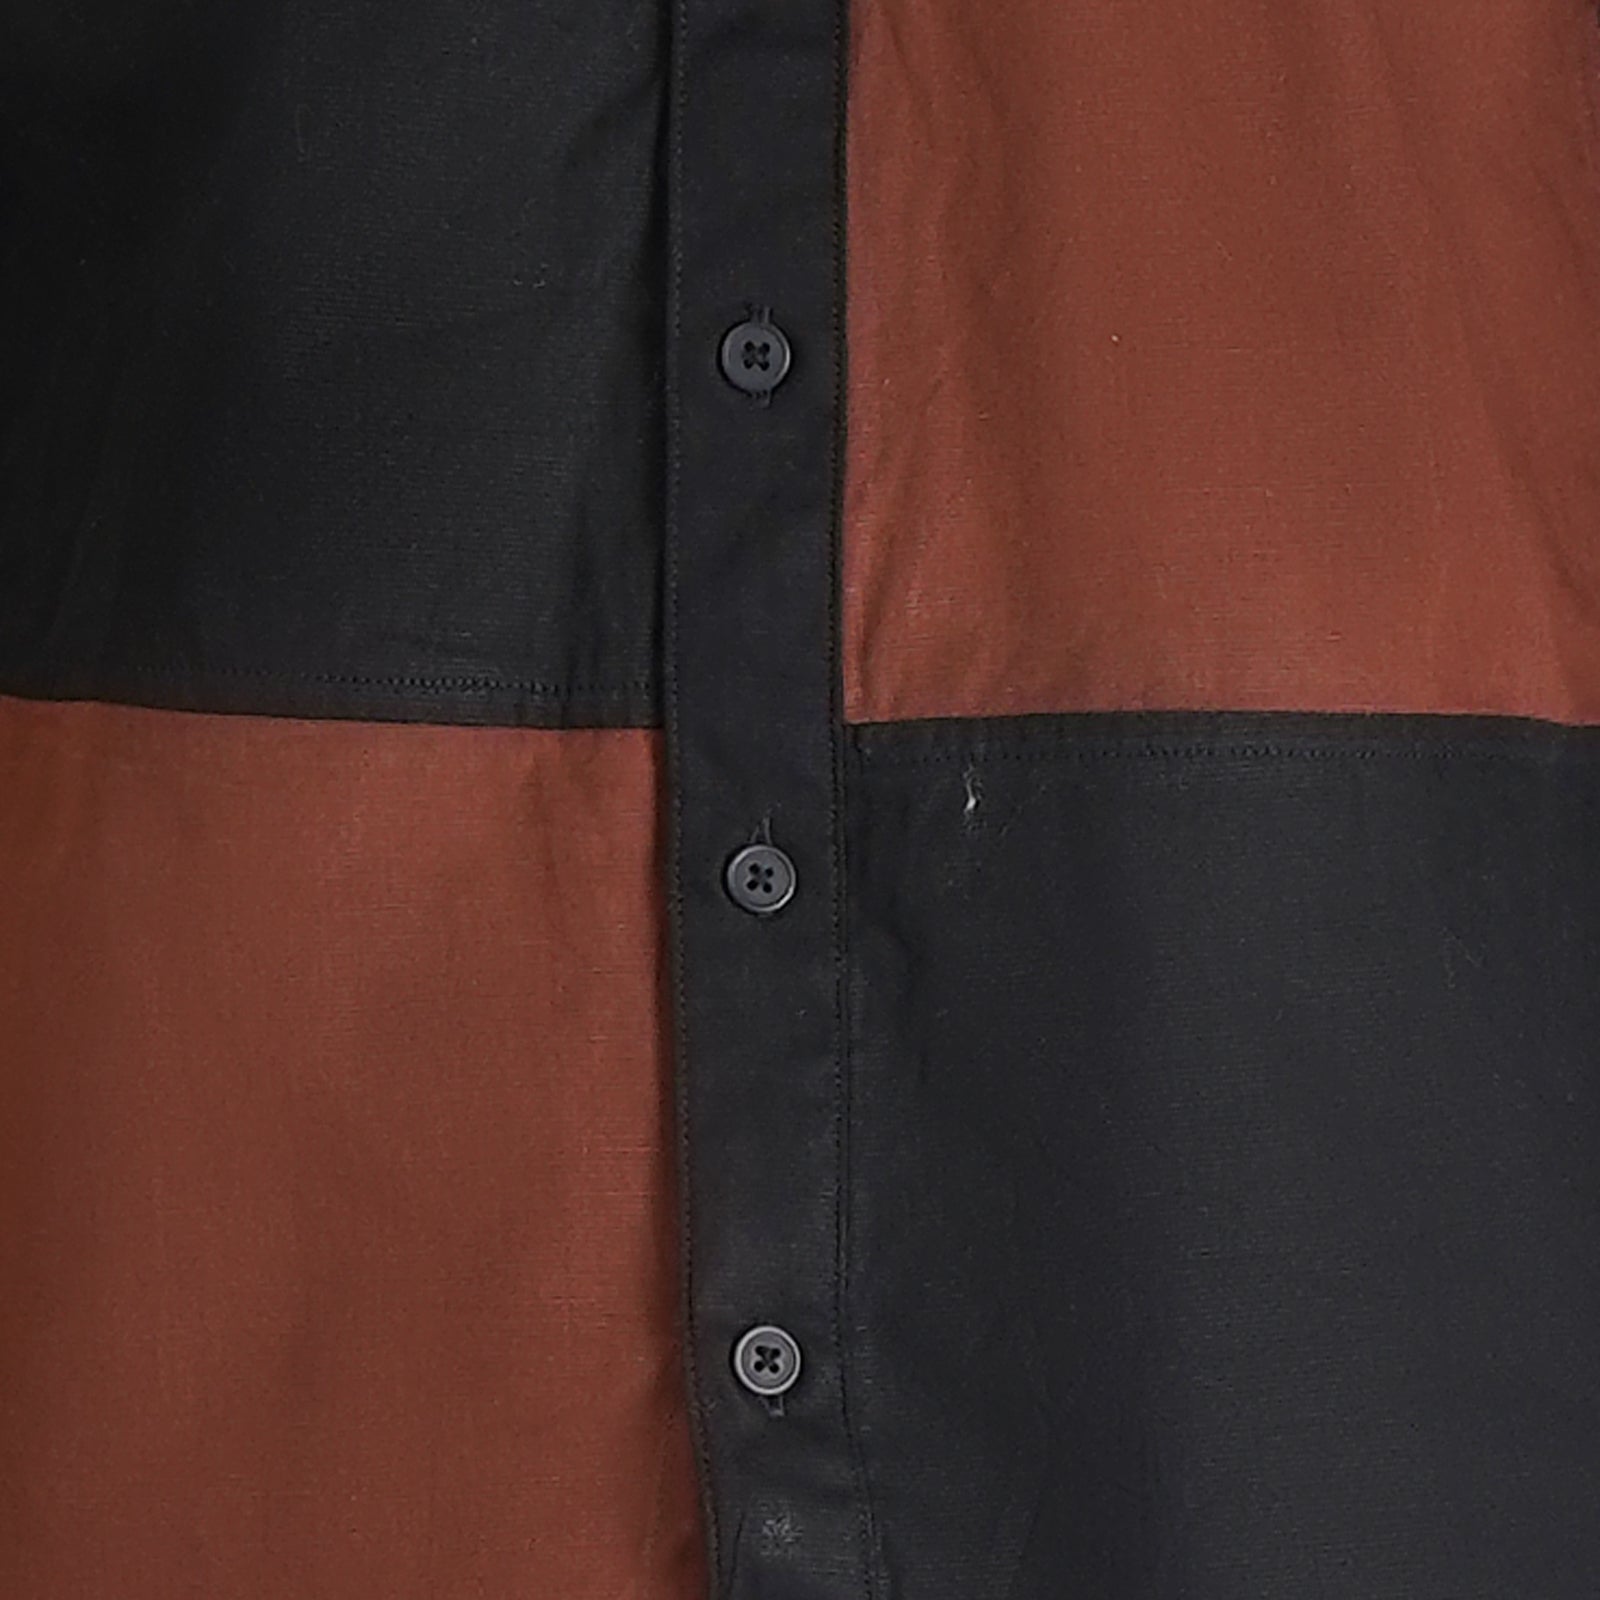 Black Brown Block Color Regular Collar Shirt-OSSM3230002